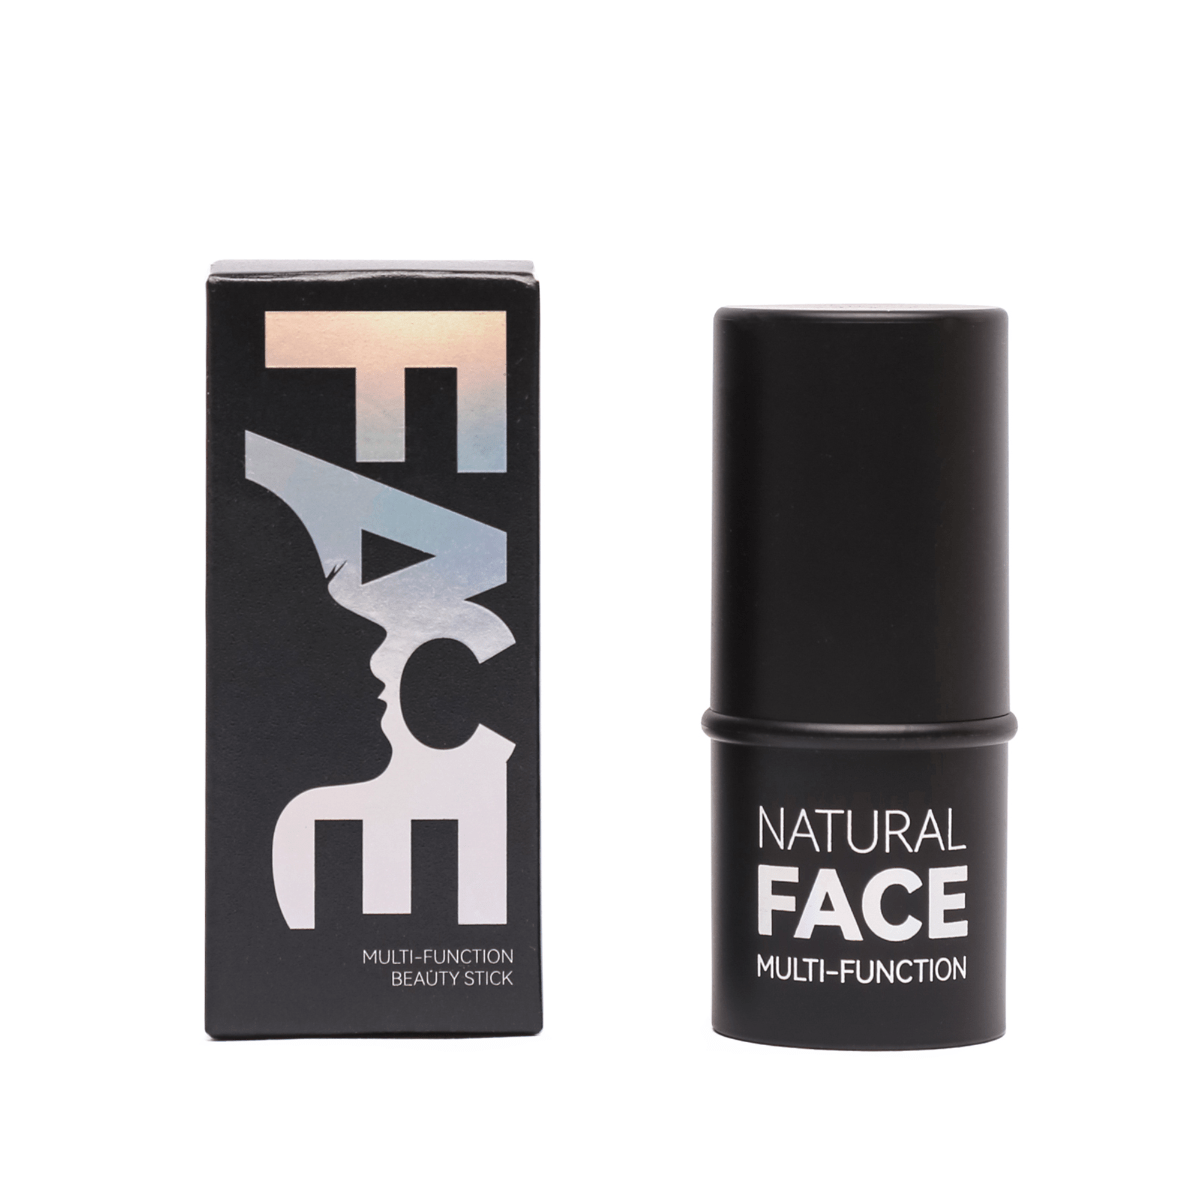 Stick Facial Multifunción - Maquillaje Multifunción